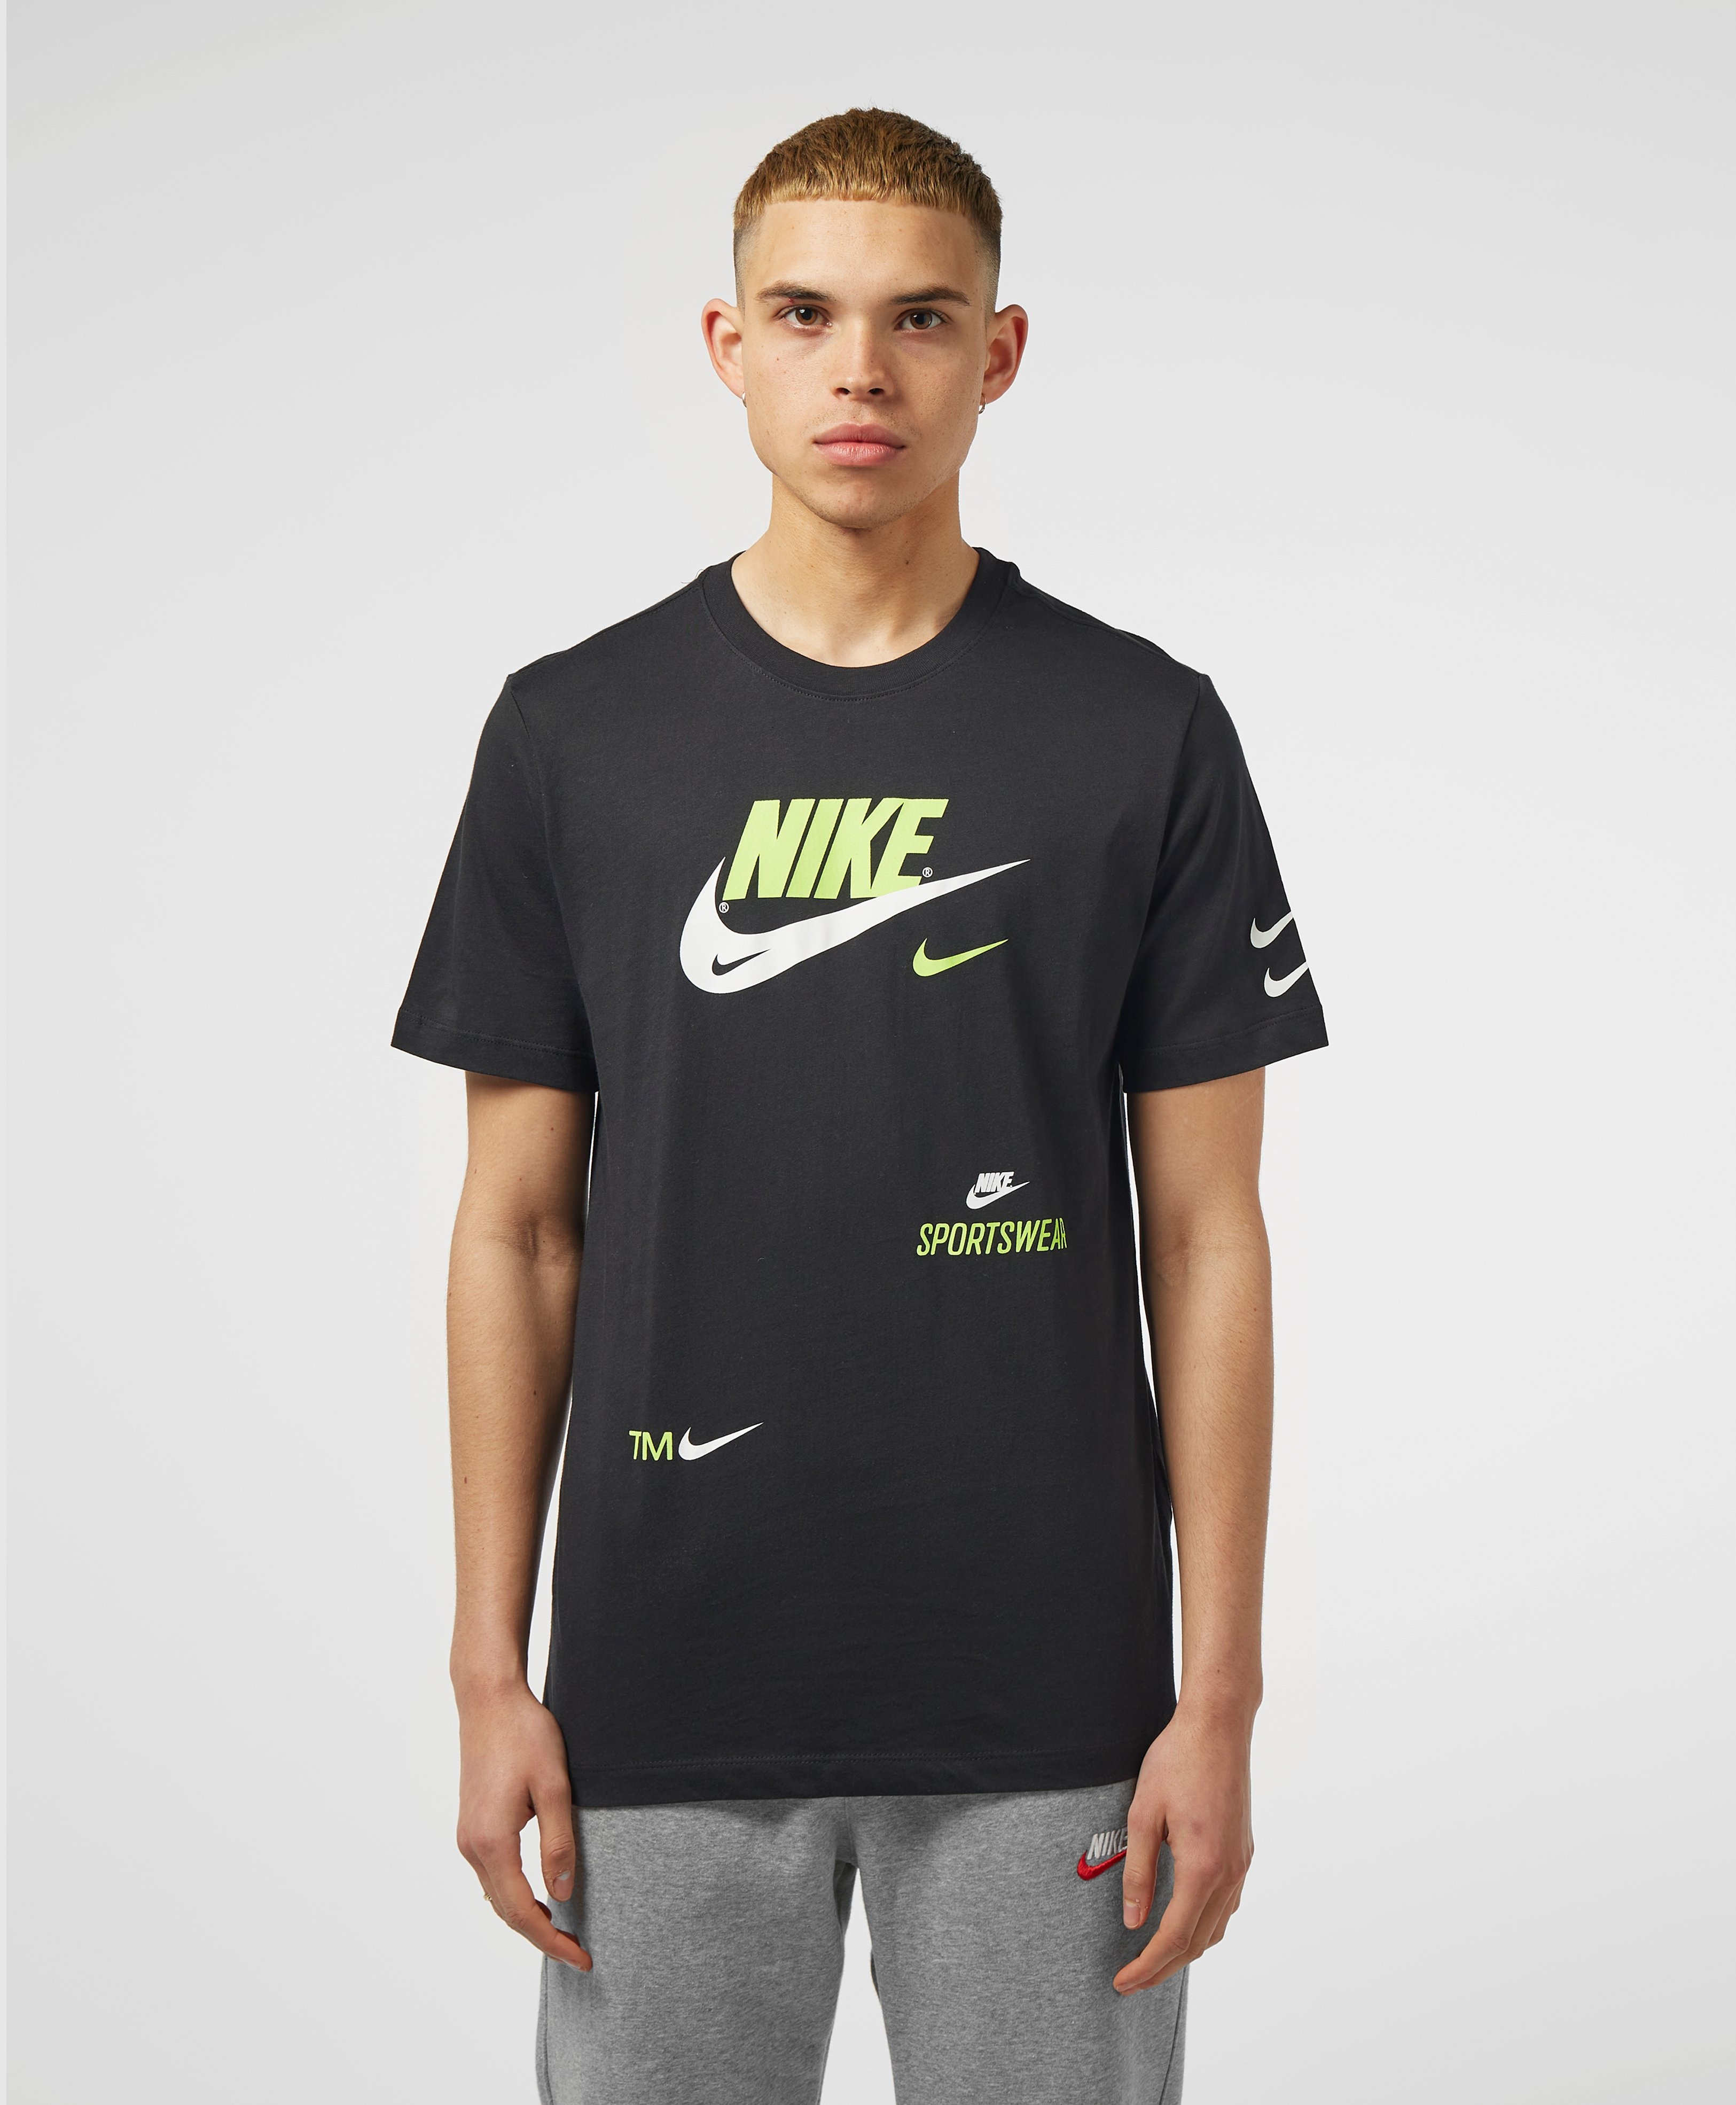 Nike Over Branded Short Sleeve T-Shirt | scotts Menswear